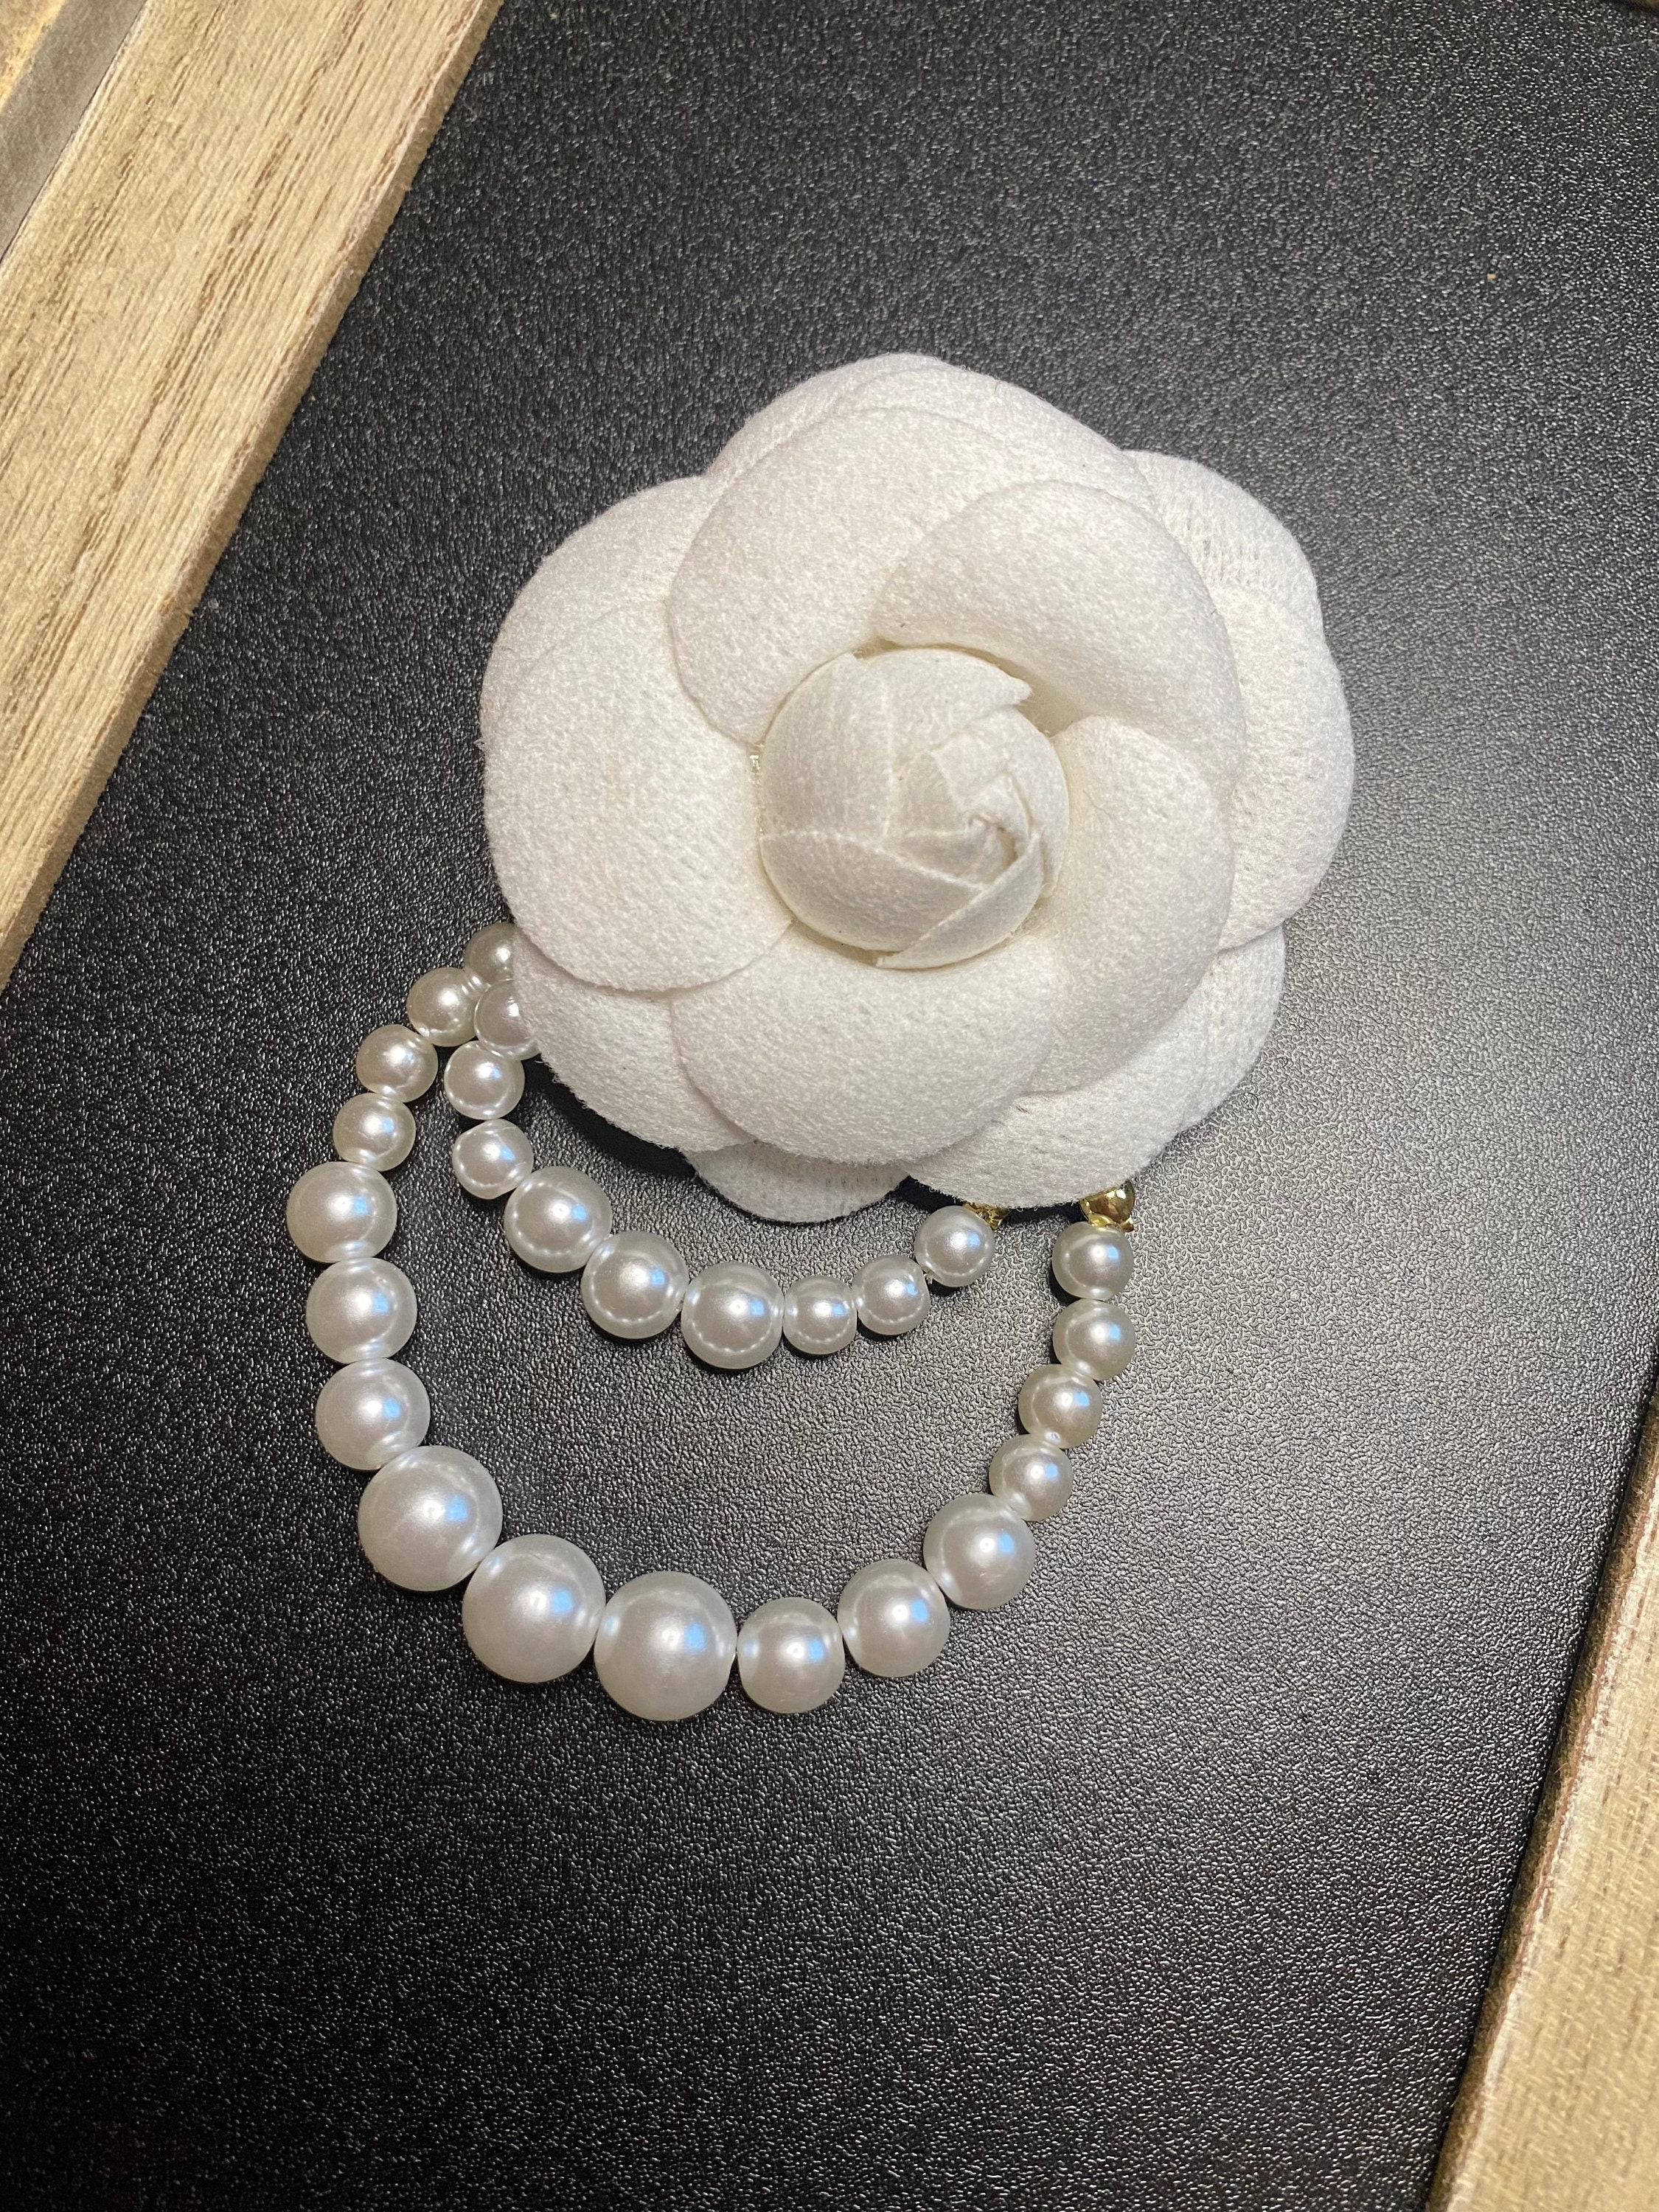 Promotional StealNew Korean Wool Camellia Flower Brooch Pins Pearl